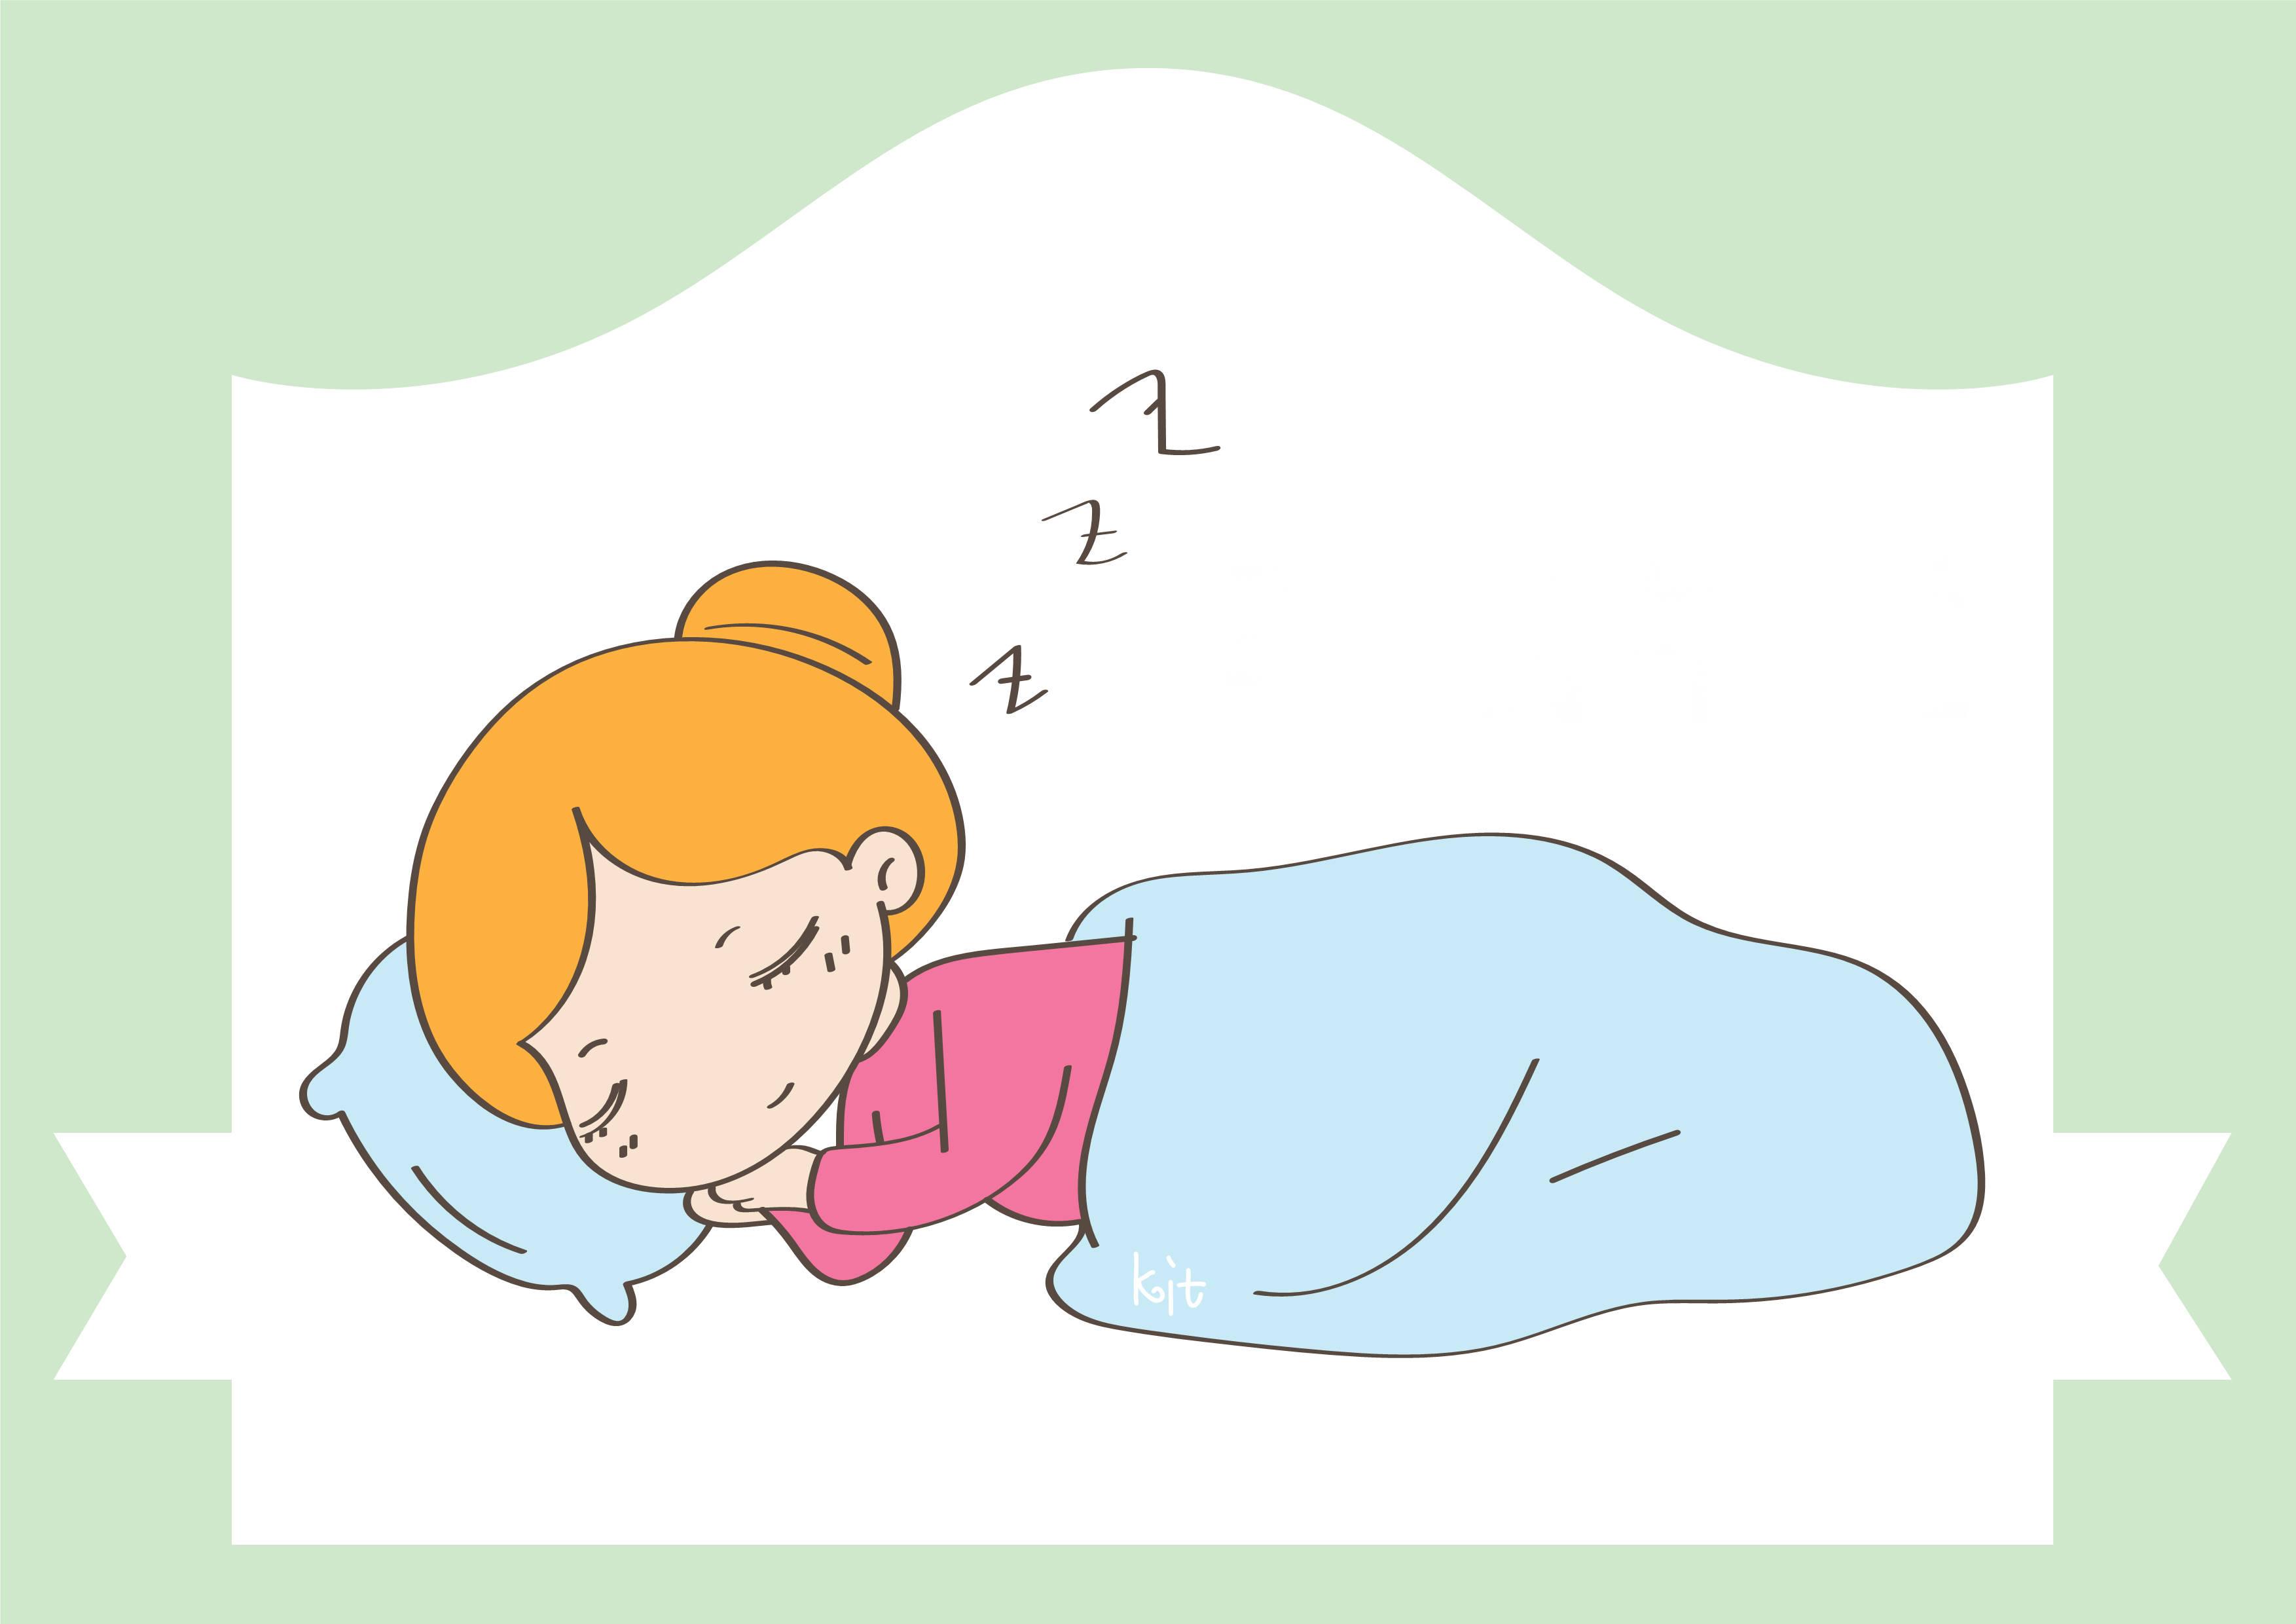 原创孕期睡眠很重要为了胎儿坏的睡觉习惯赶紧改